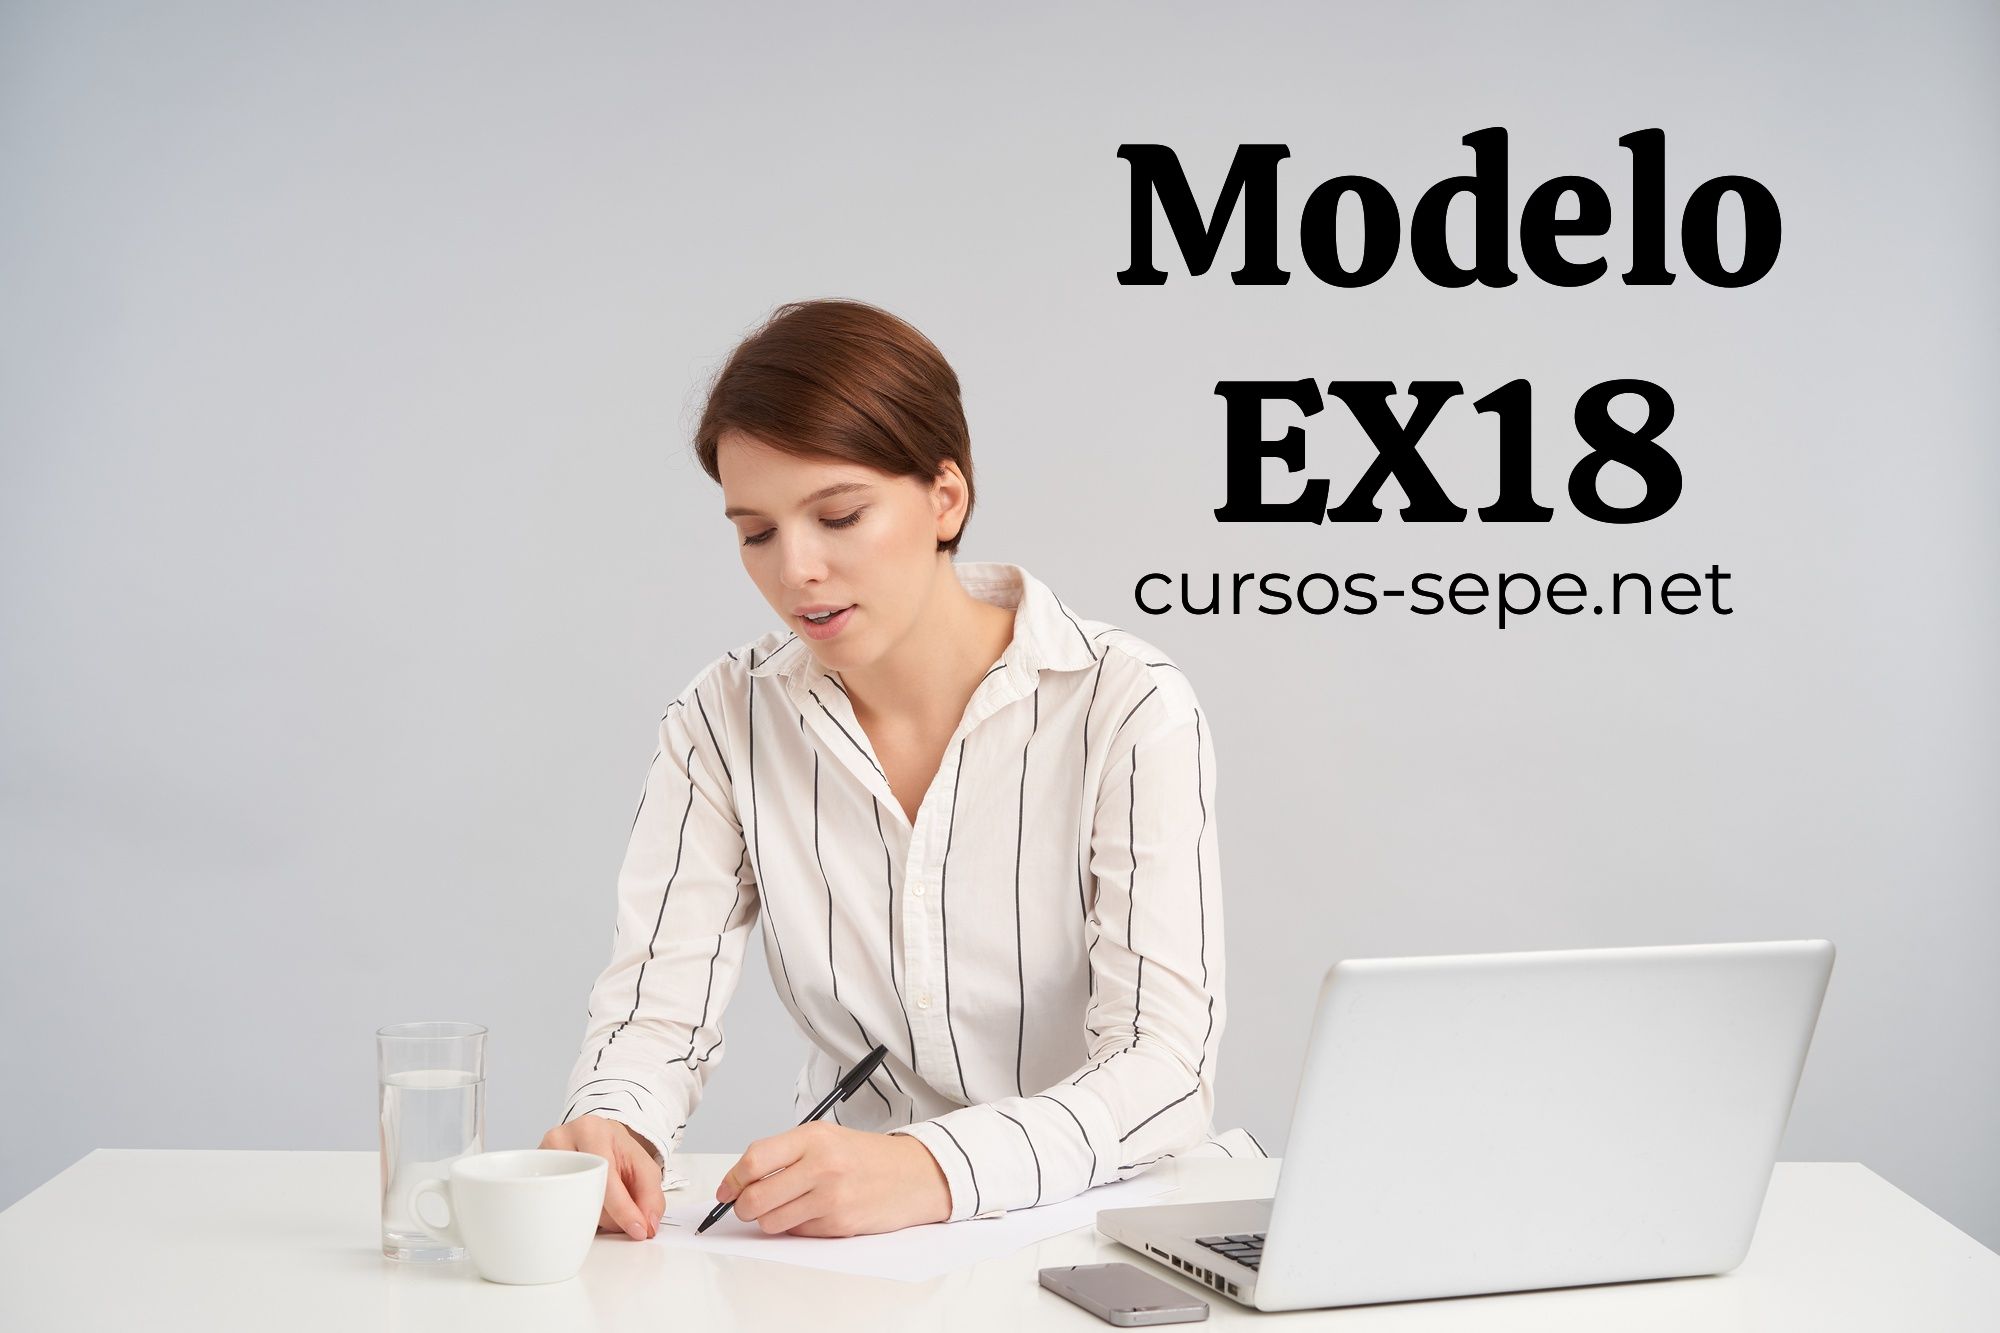 Aprende a completar correctamente el modelo EX-18 para residir legalmente en España si eres residente de la UE.